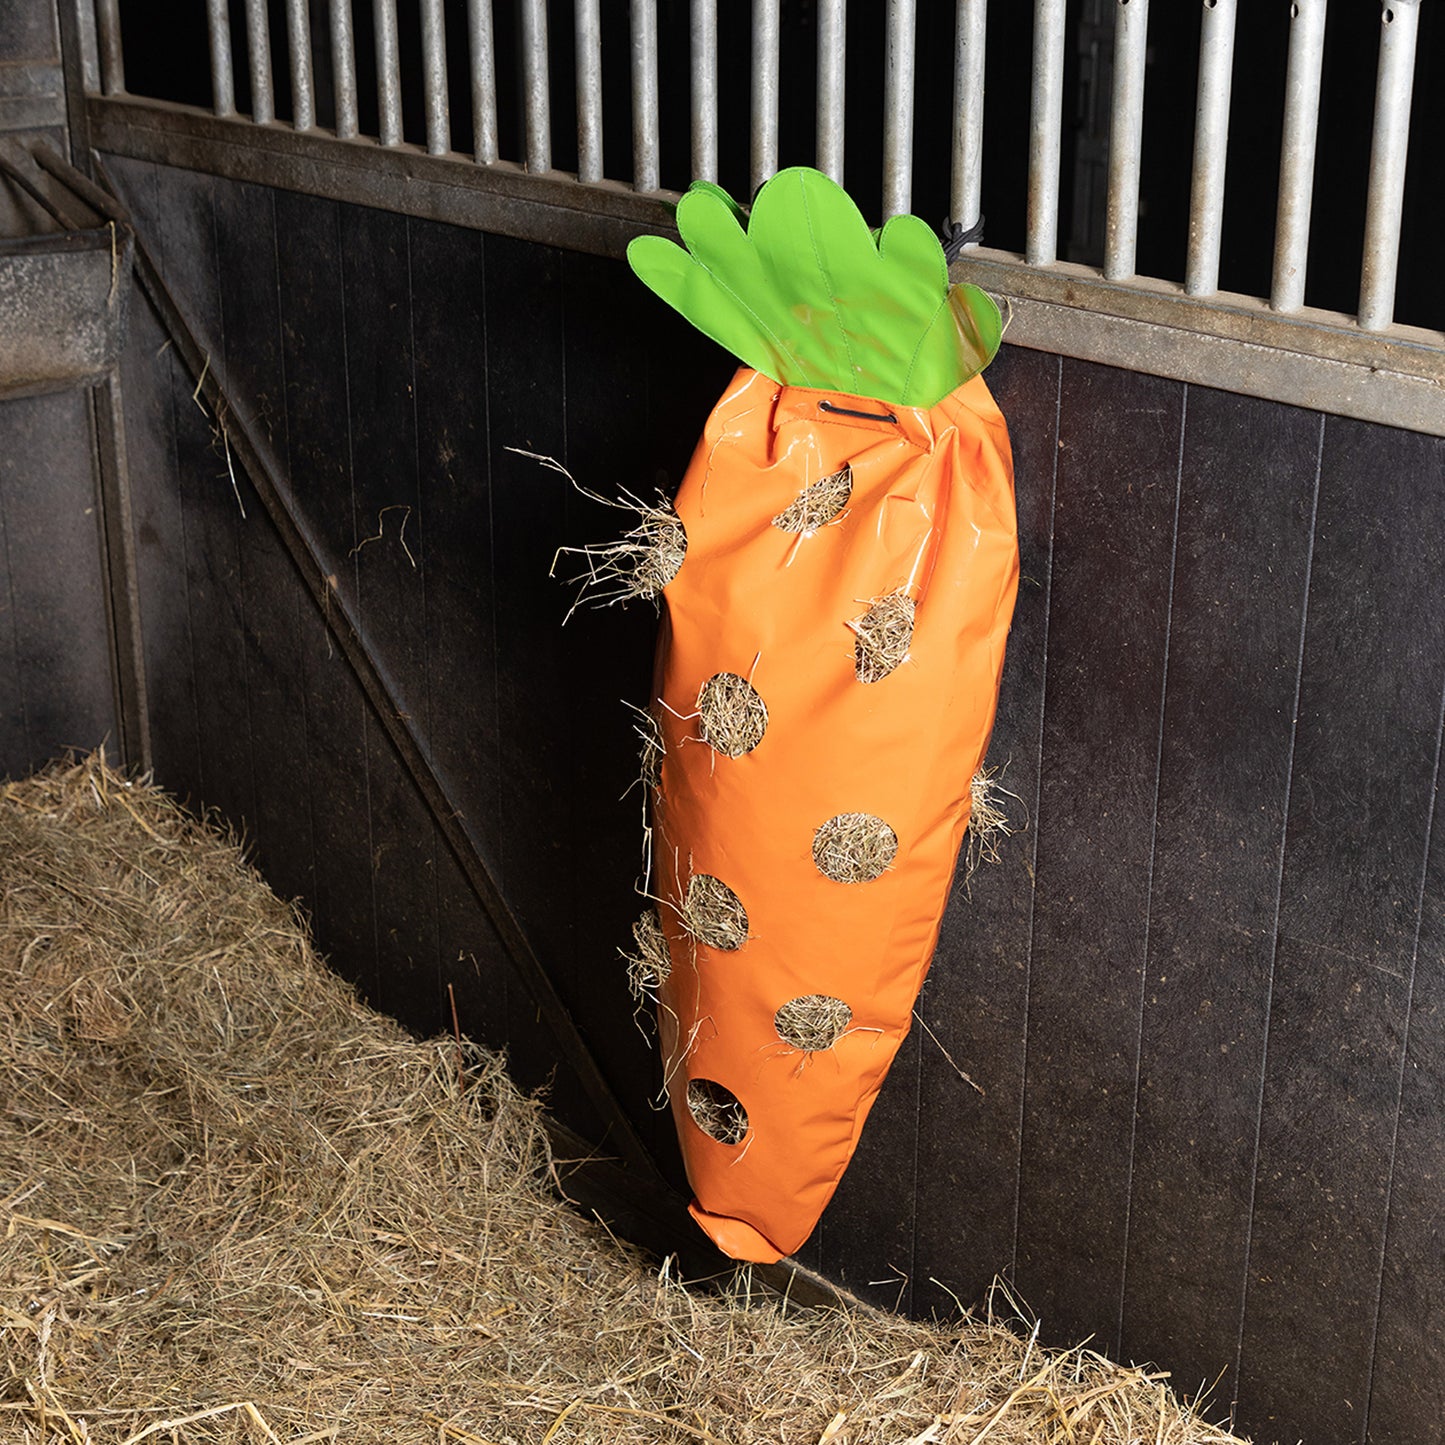 Imperial Riding Hay Fun Carrot, hönät format som en morot